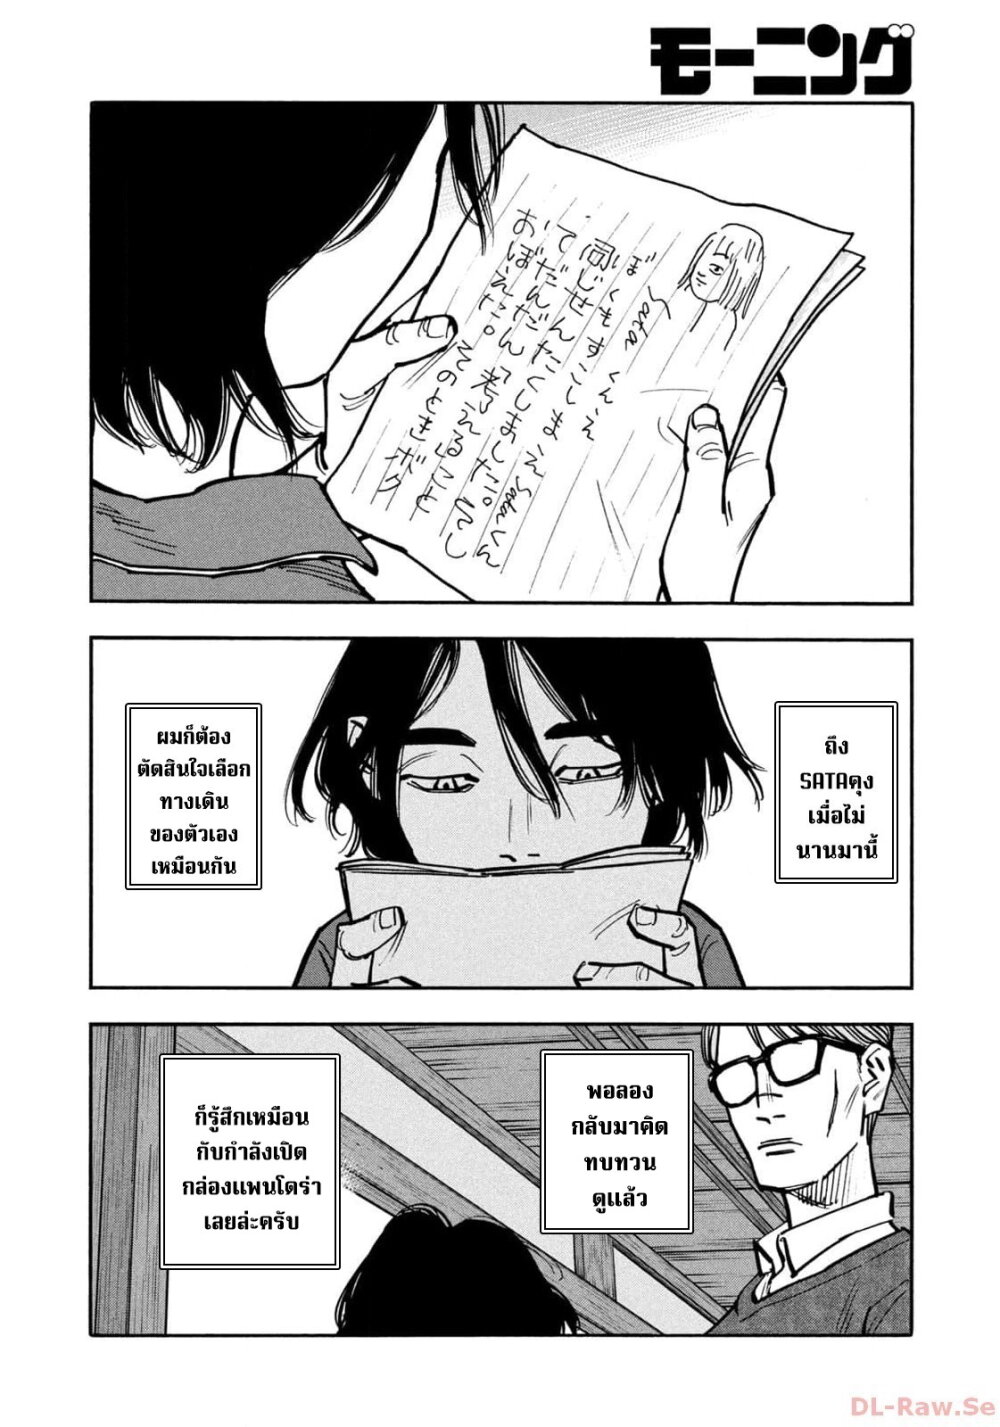 อ่านมังงะ Heiwa no Kuni no Shimazaki e ตอนที่ 51/13.jpg